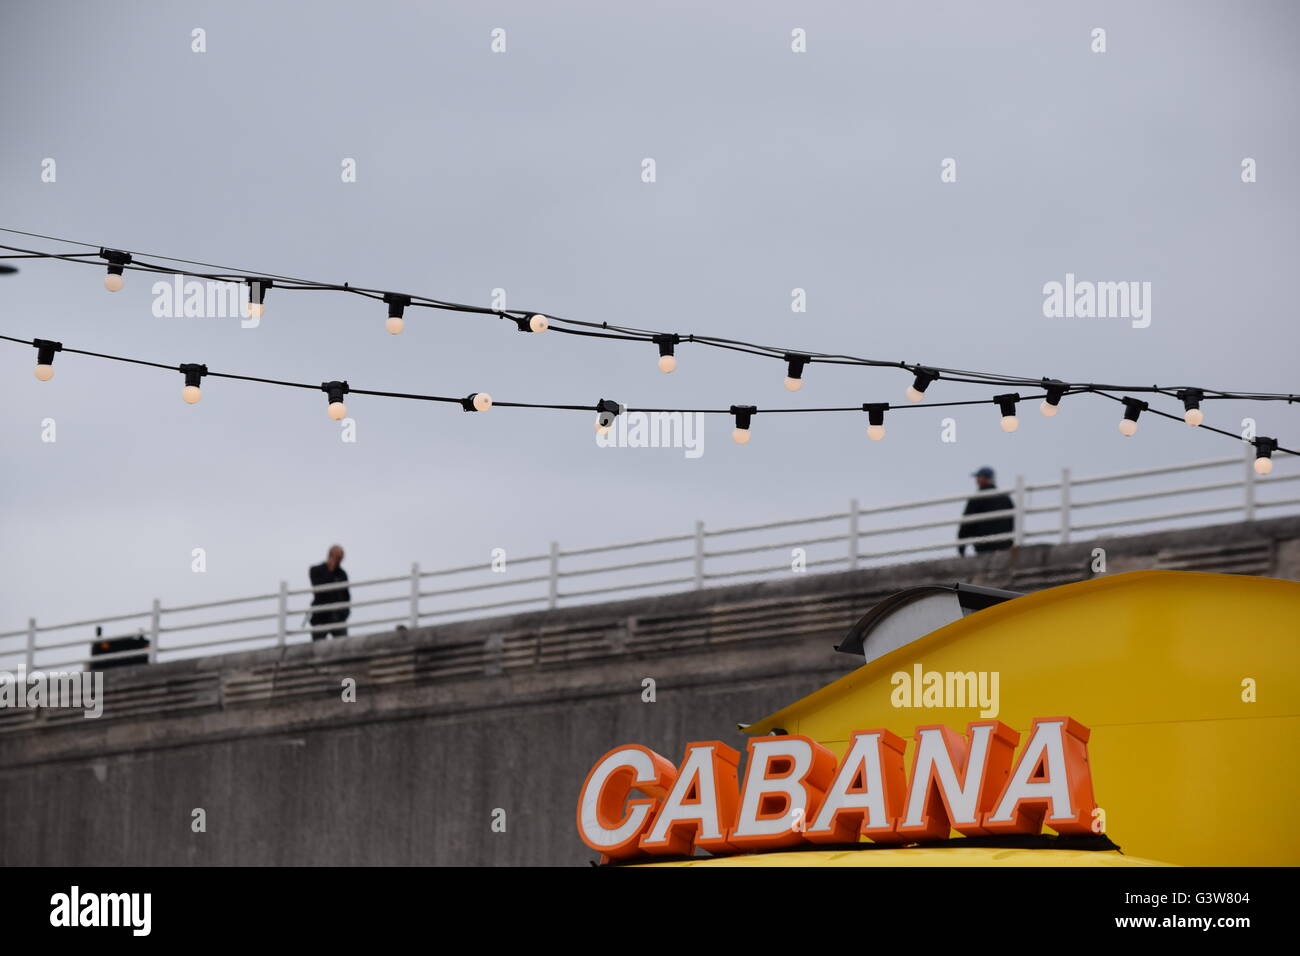 Cabana Stock Photo